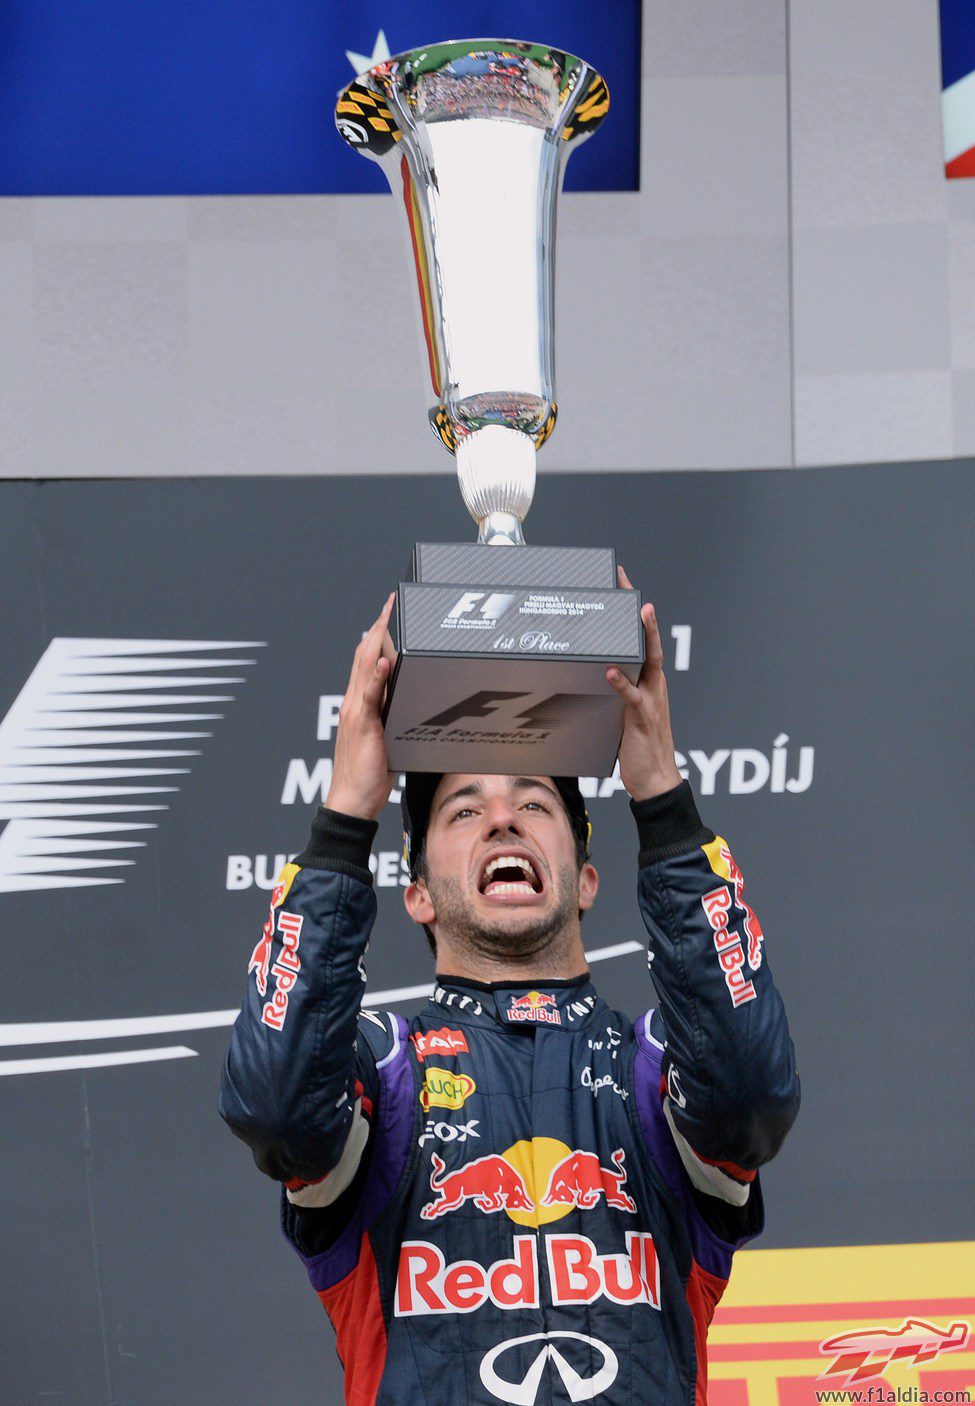 Daniel Ricciardo alza el trofeo exultante